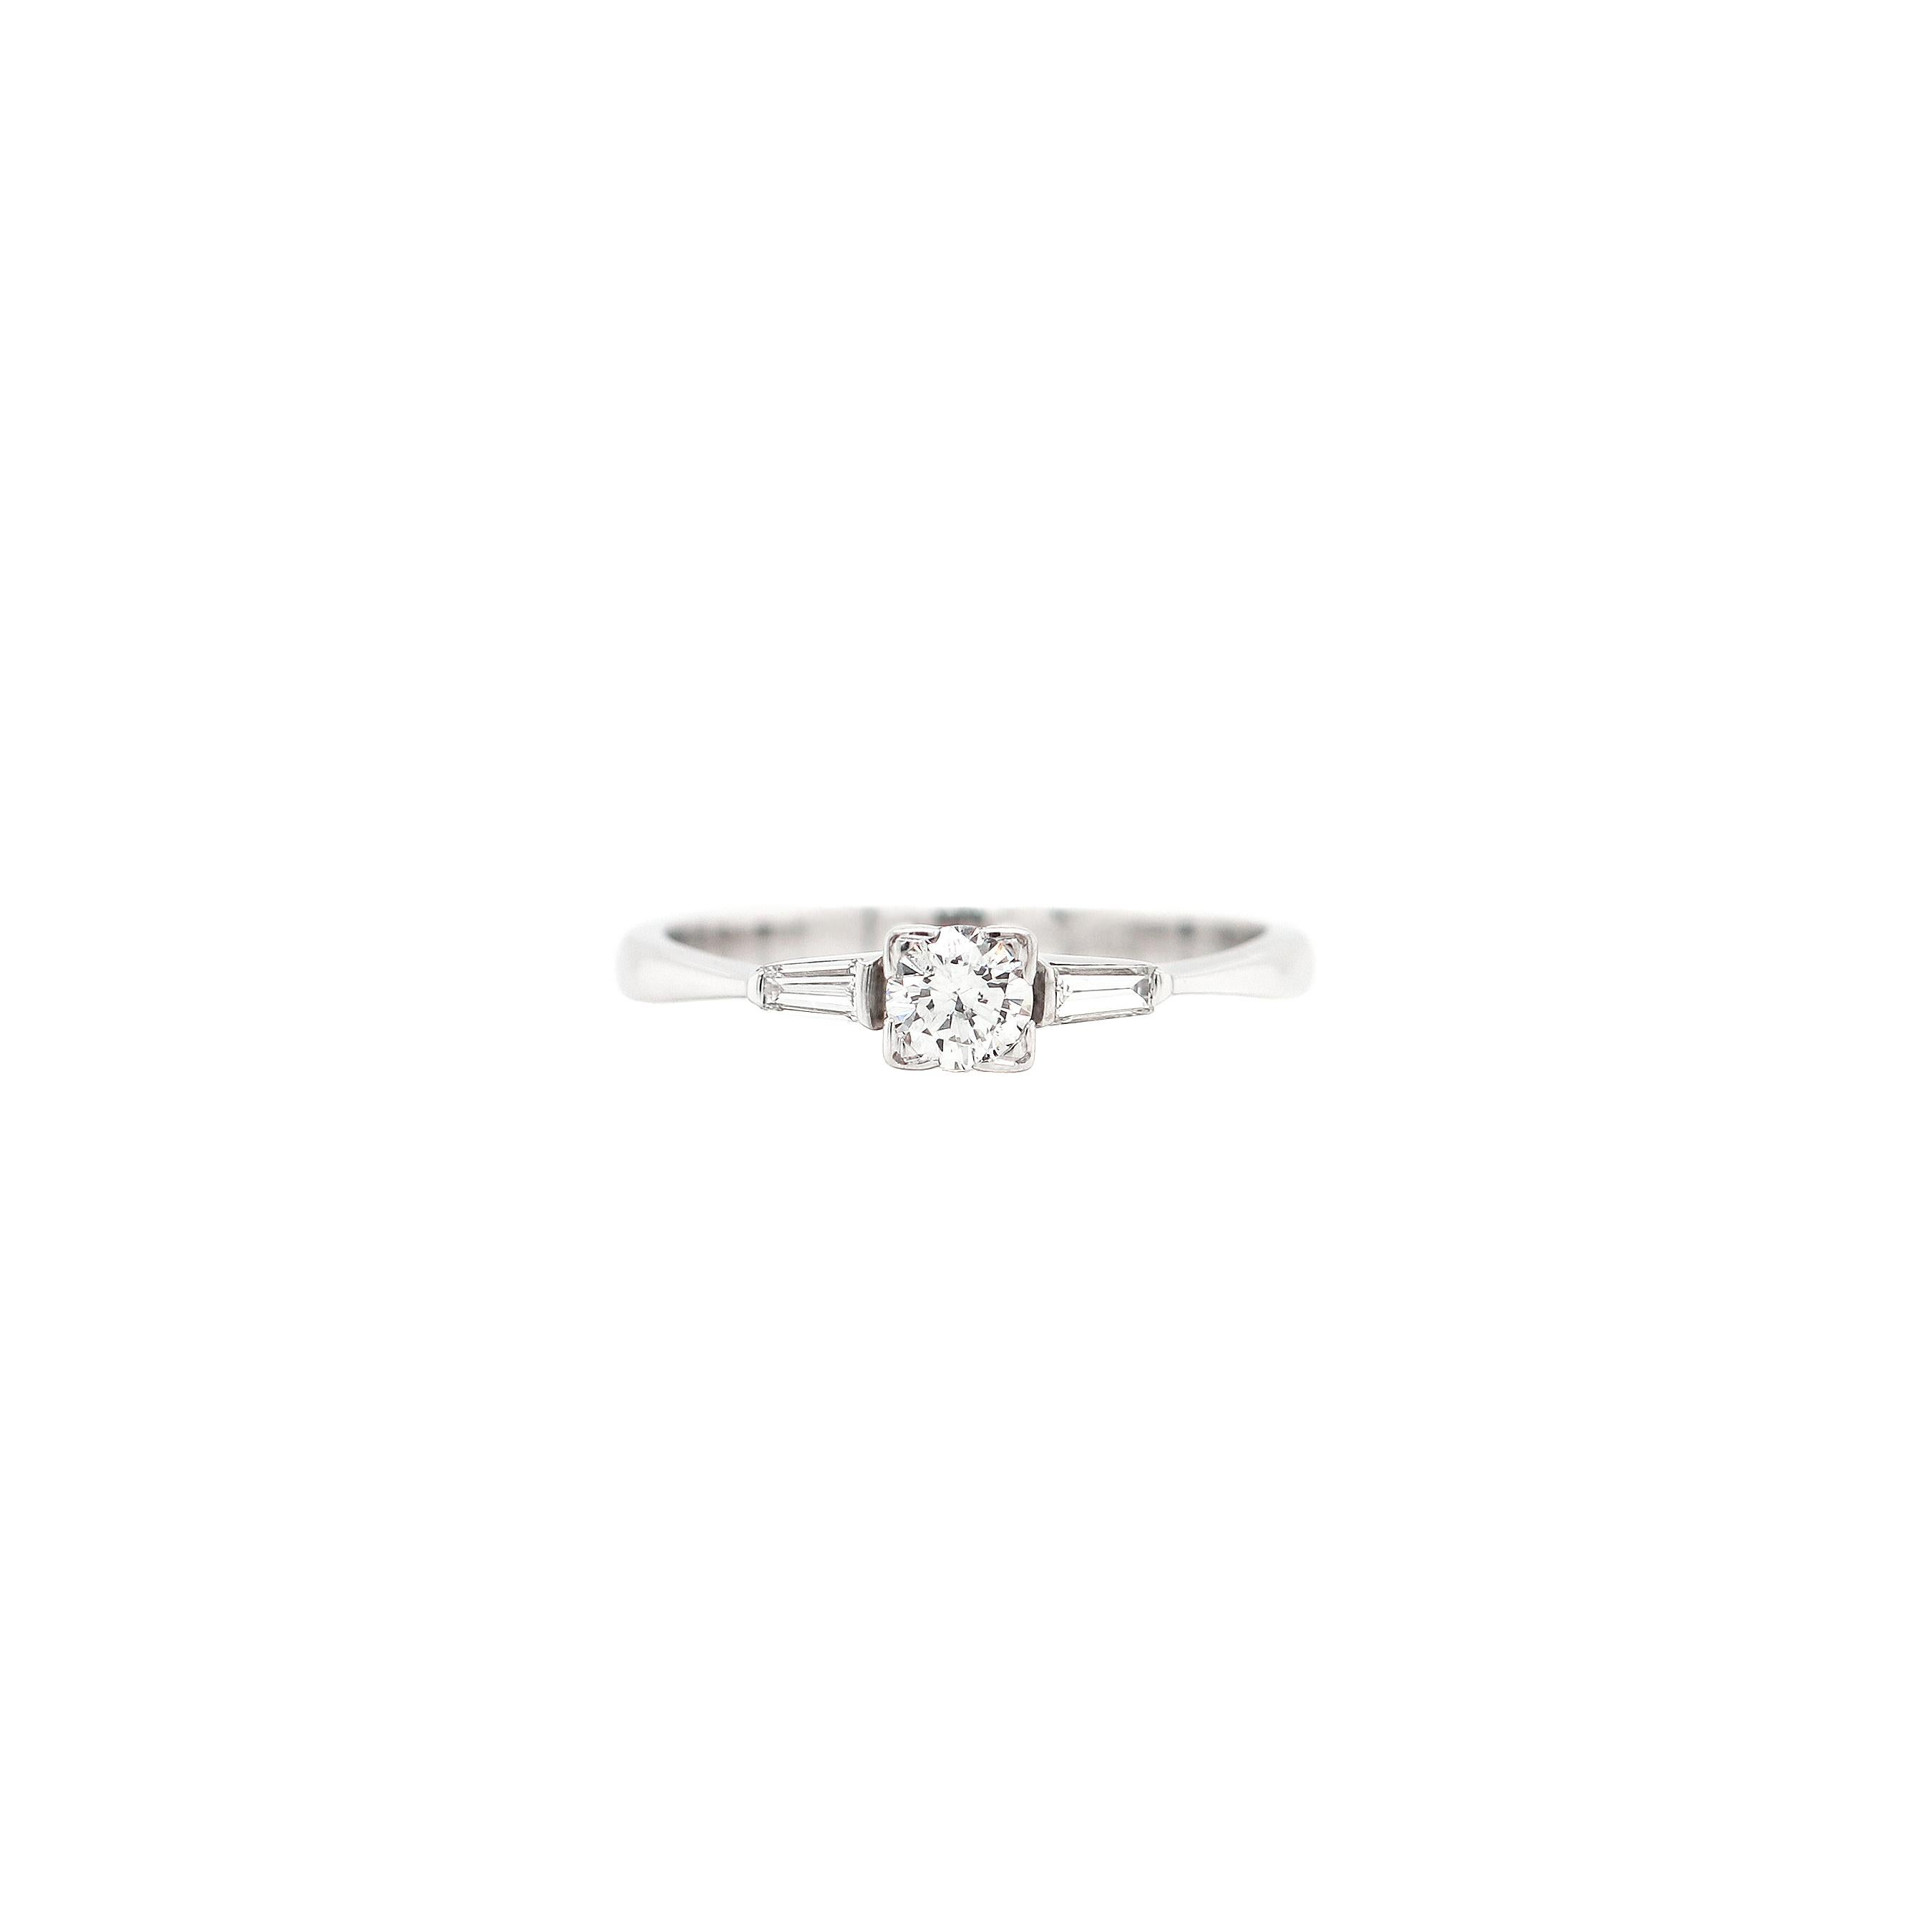 Ein schöner Verlobungsring im Art-Deco-Stil, besetzt mit einem runden Diamanten im Brillantschliff mit einem Gewicht von 0,30 ct in einer offenen Kastenfassung. Der Diamant in der Mitte wird von zwei spitz zulaufenden Diamanten im Baguetteschliff